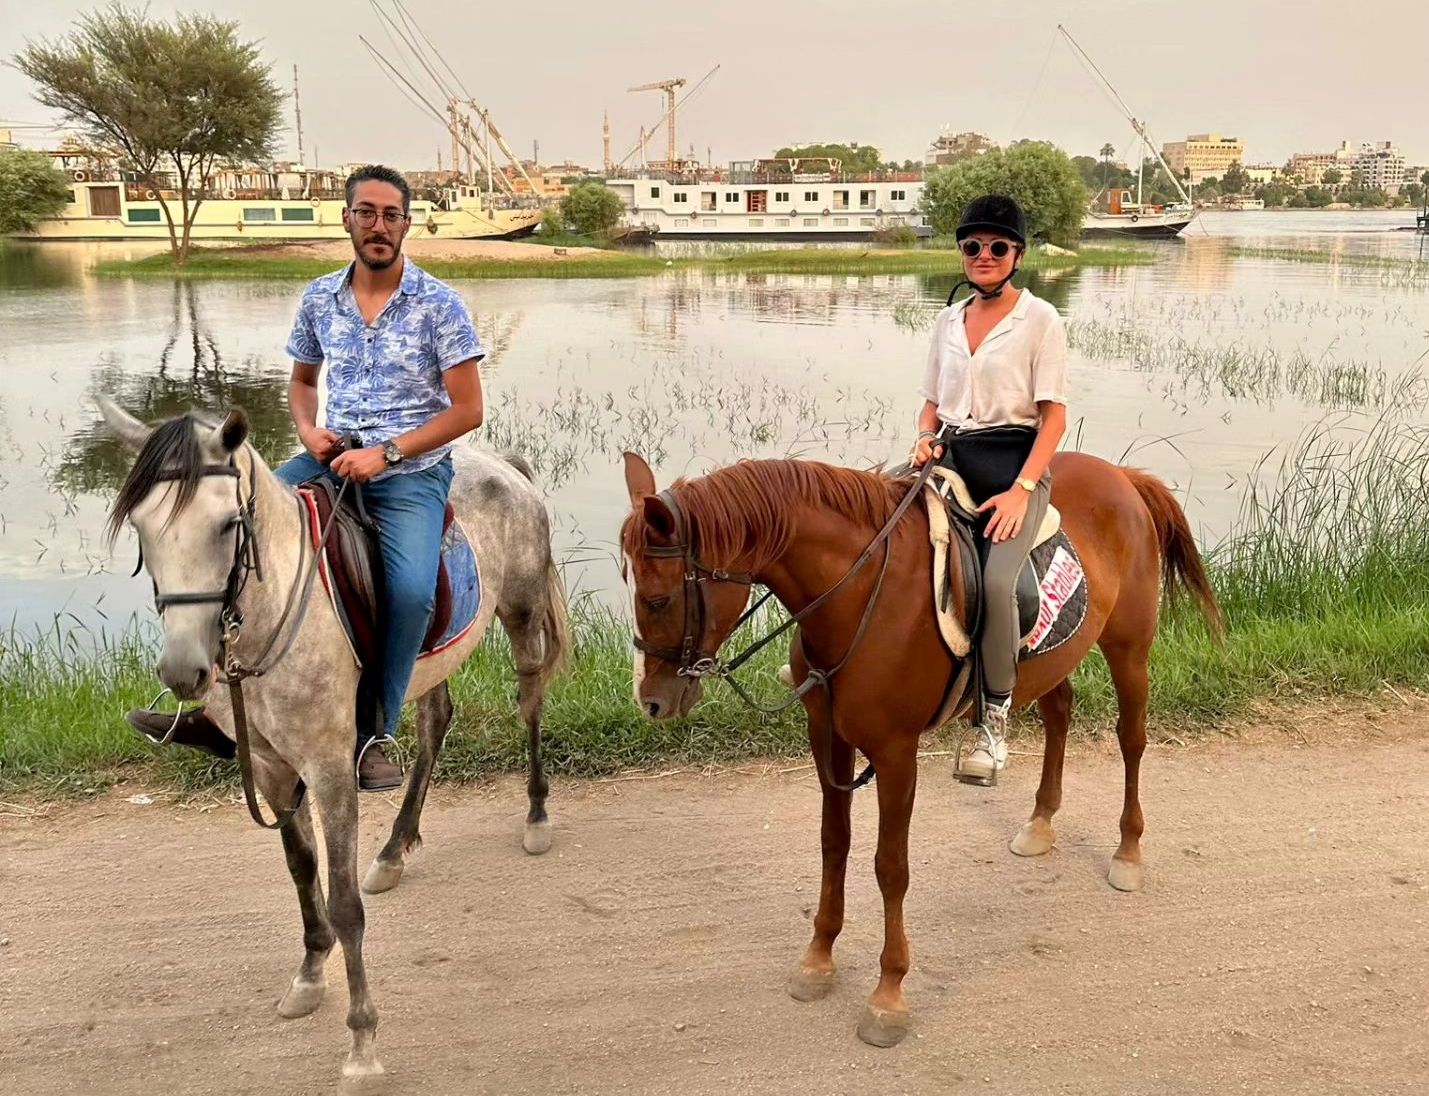 السياح على الخيول مع أبناء غرب الأقصر على ضفة النيل